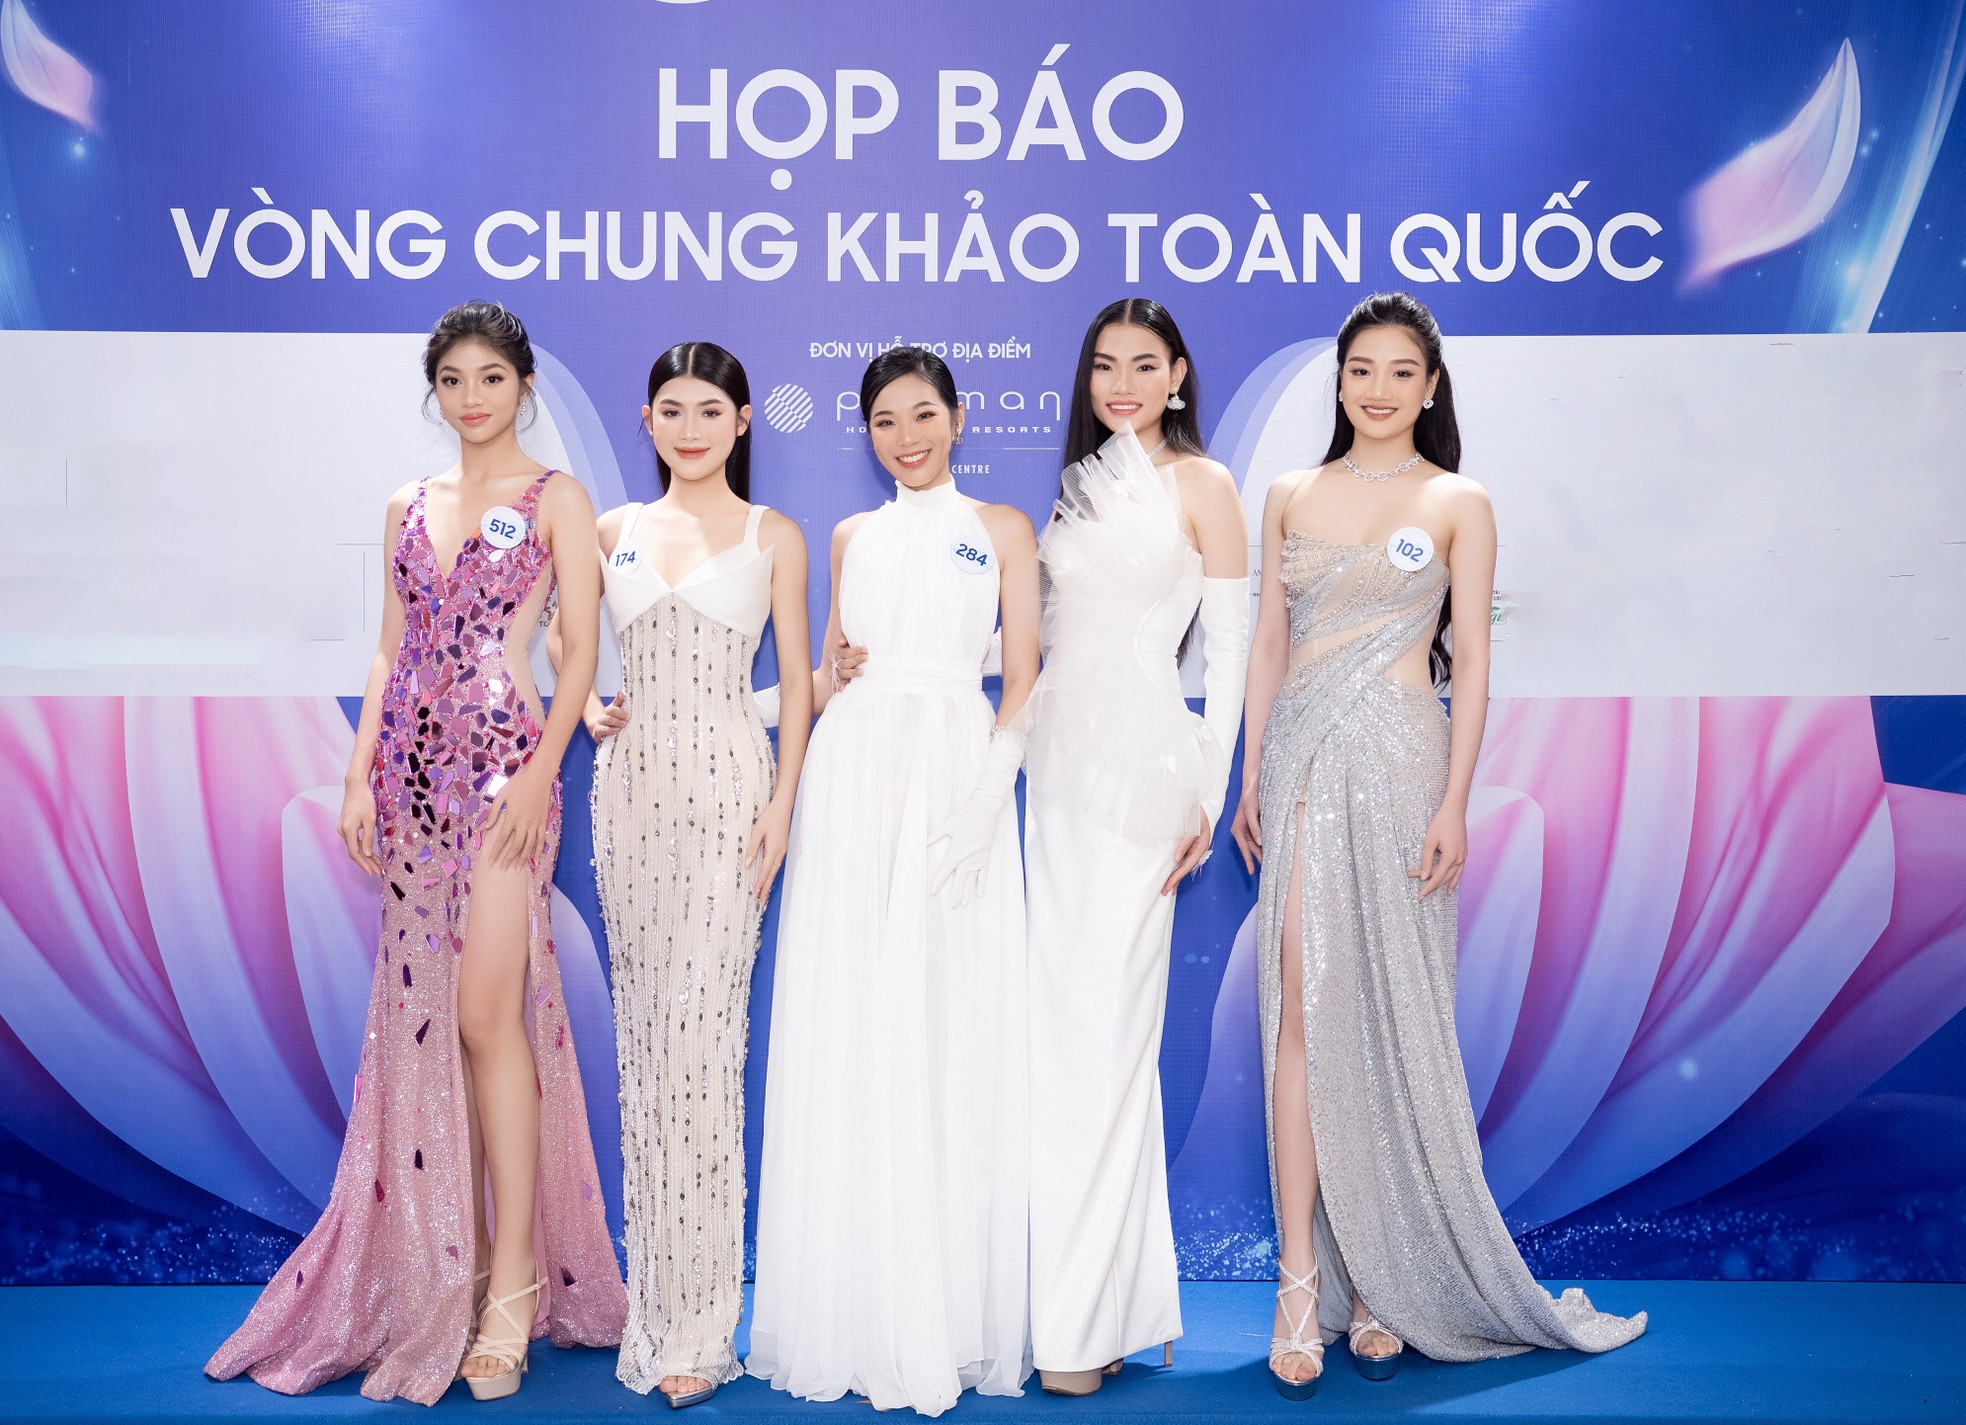 Nhan sắc 59 cô gái vào chung khảo Hoa hậu Thế giới Việt Nam 2023 - Ảnh 1.